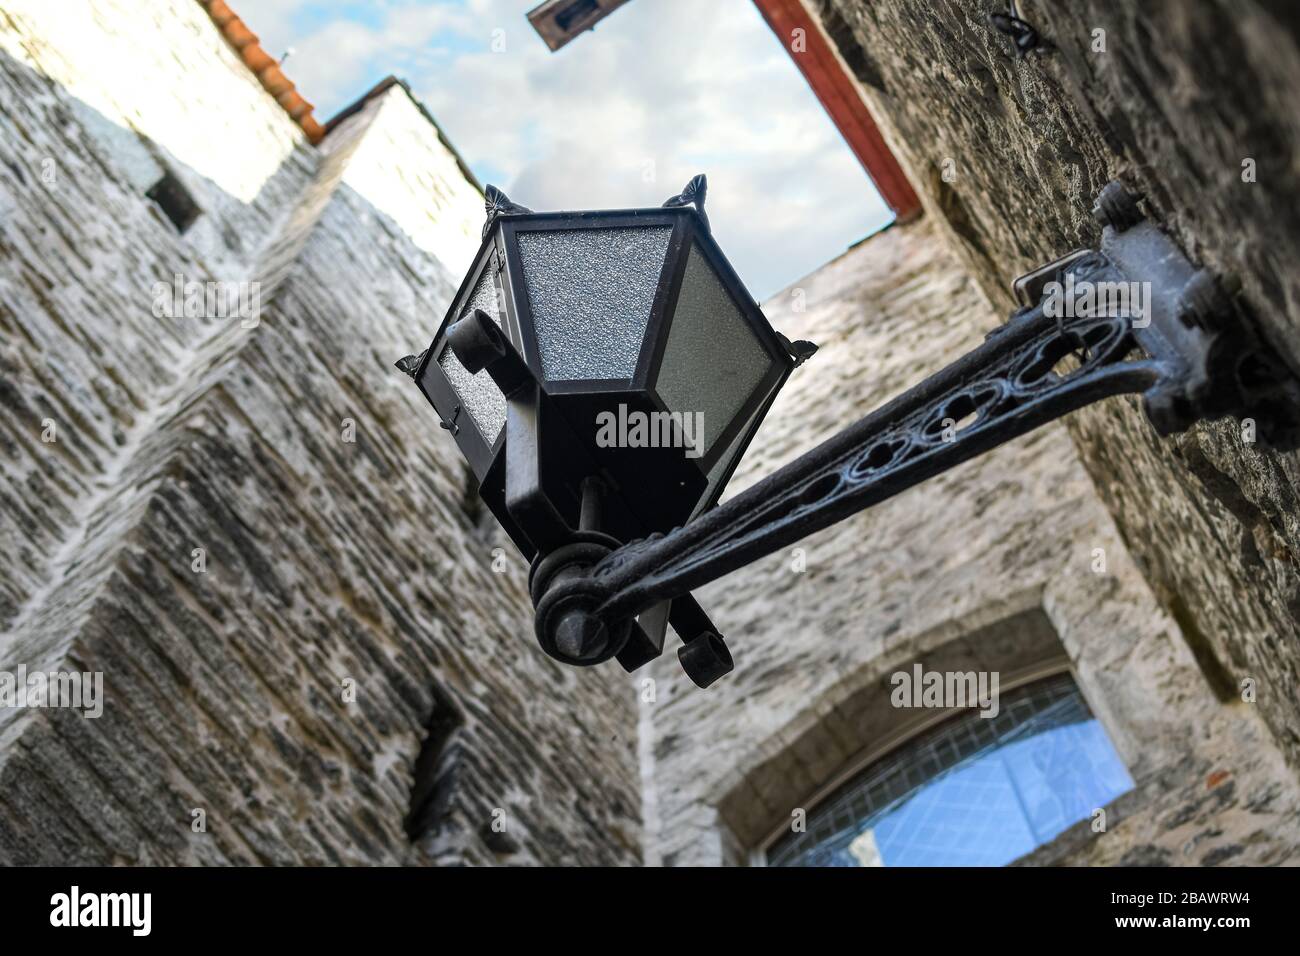 Selektiver Fokusschuss einer Straßenleuchte aus dem 19. Jahrhundert, die von unten in einer schmalen mittelalterlichen Gasse in der Stadt Tallinn Estland zu sehen ist. Stockfoto